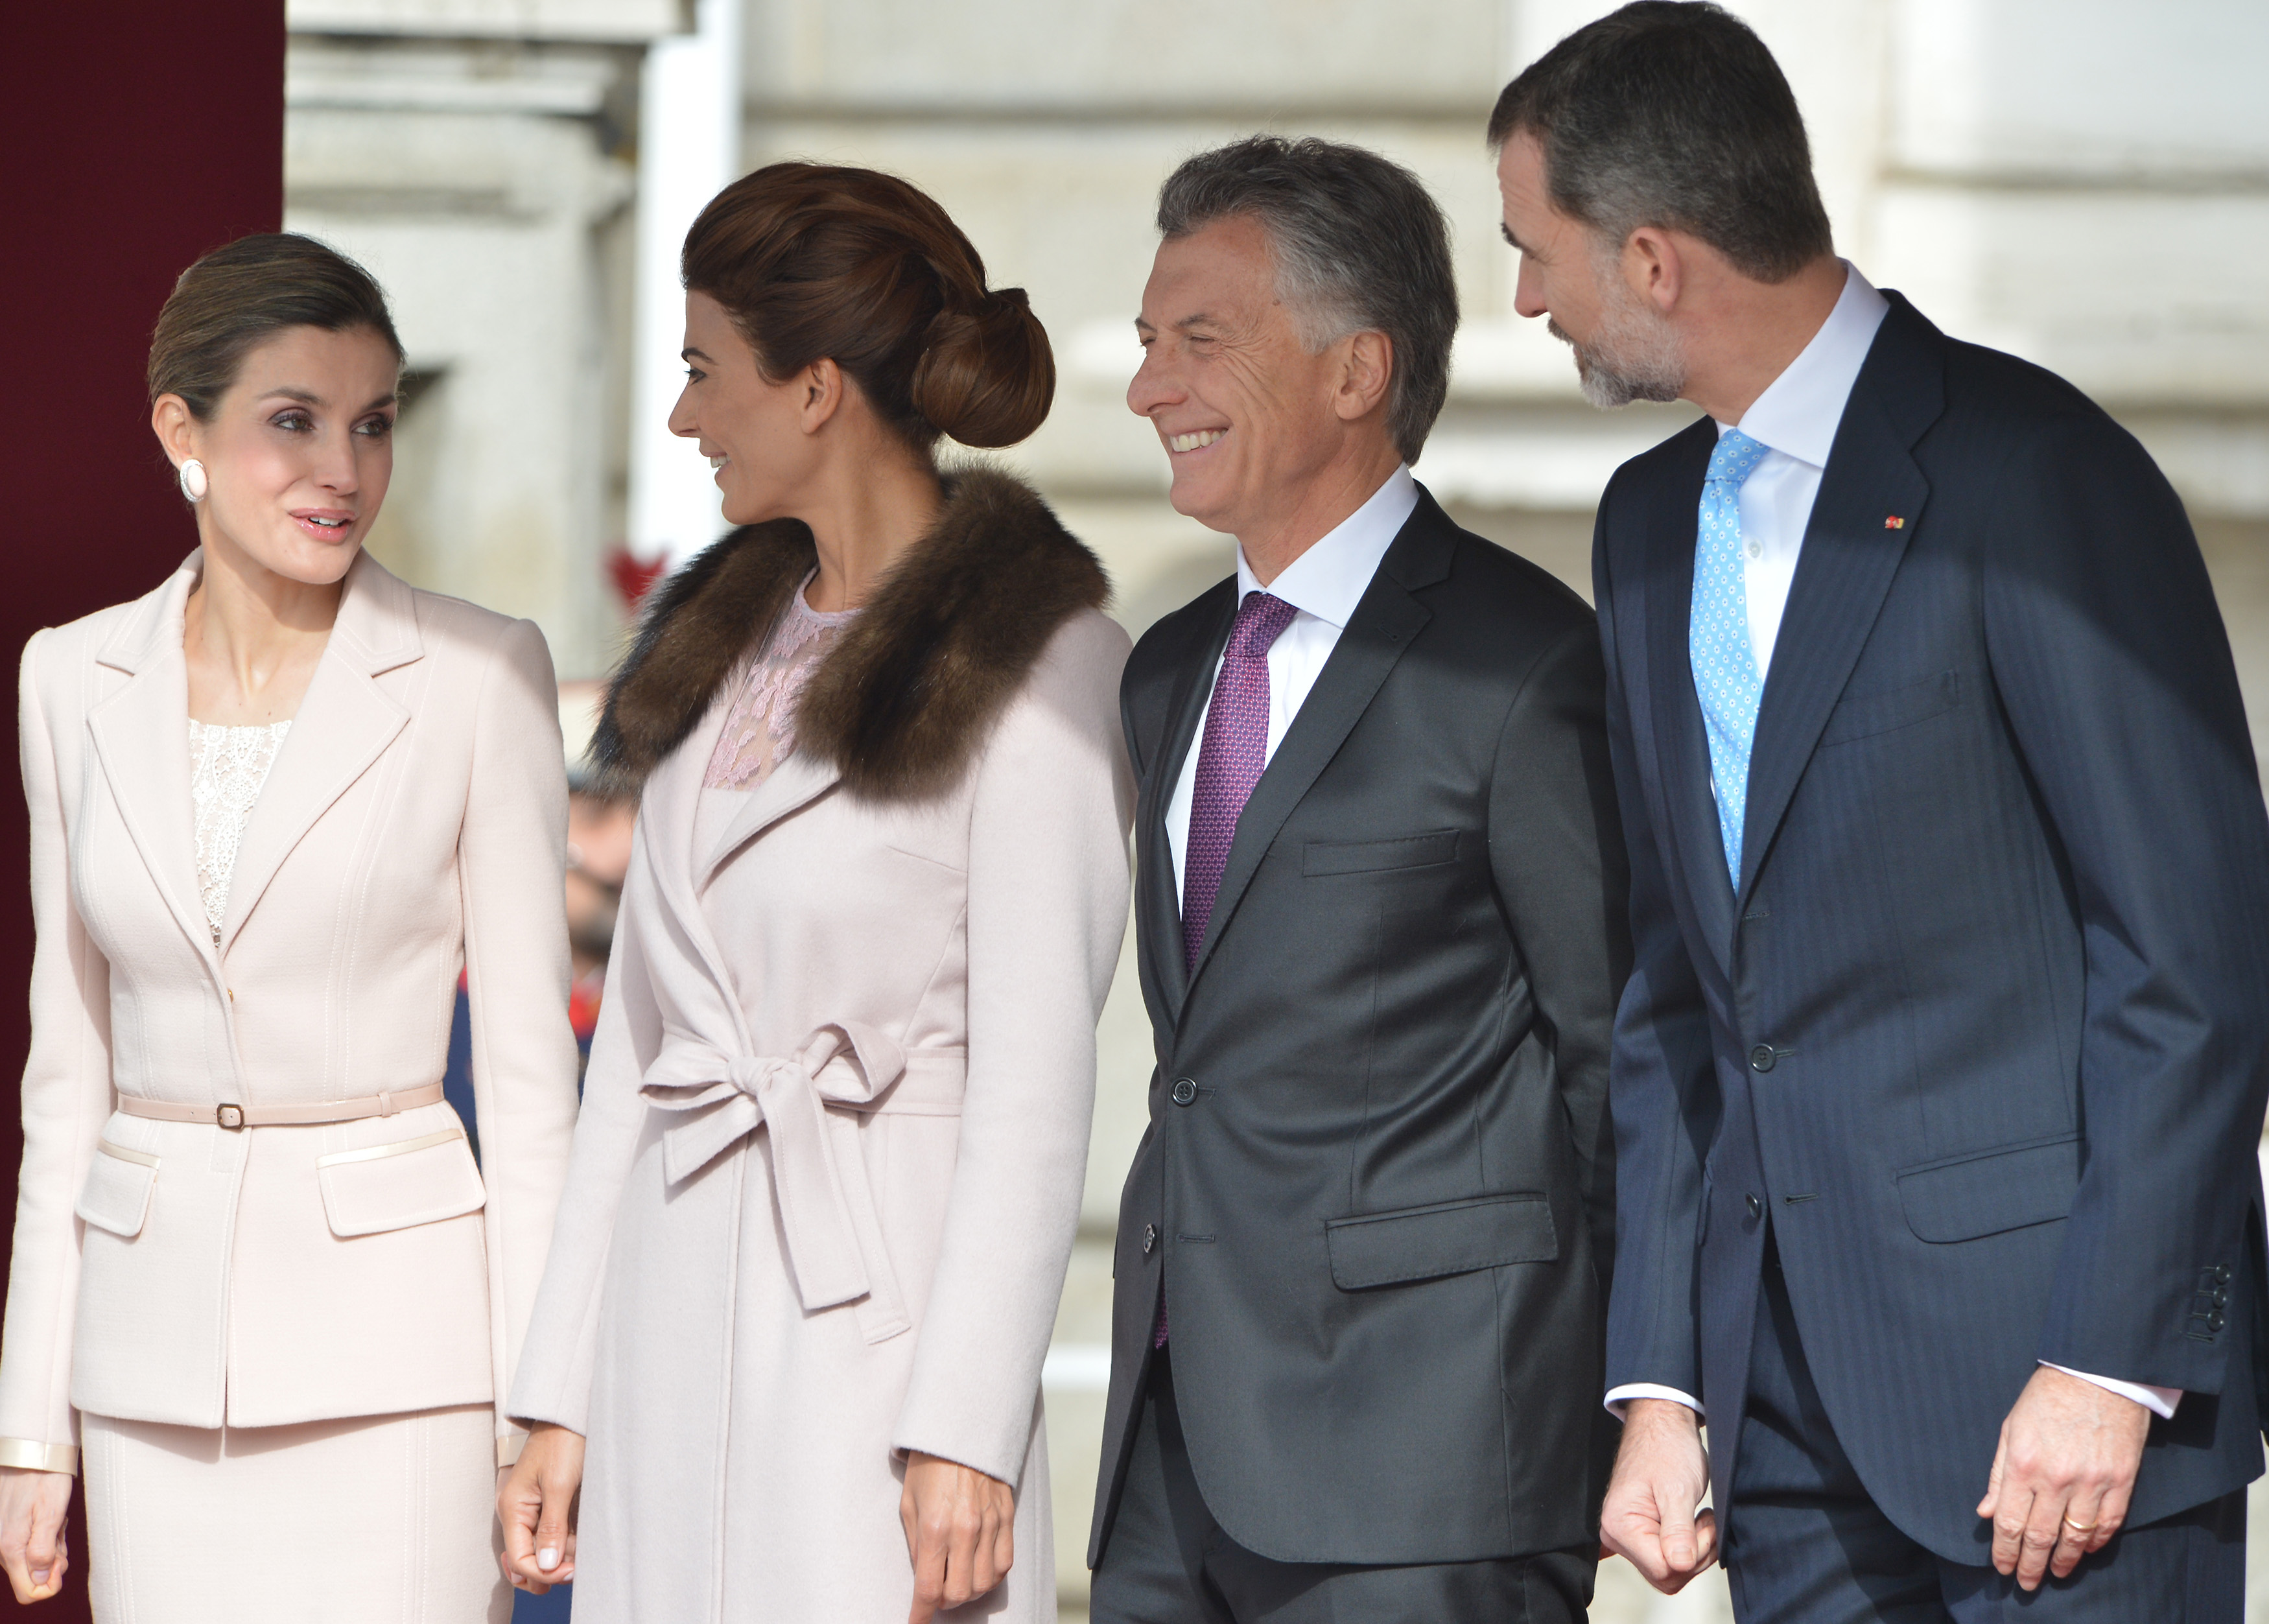 Los reyes de España dieron la bienvenida oficial al presidente Macri 